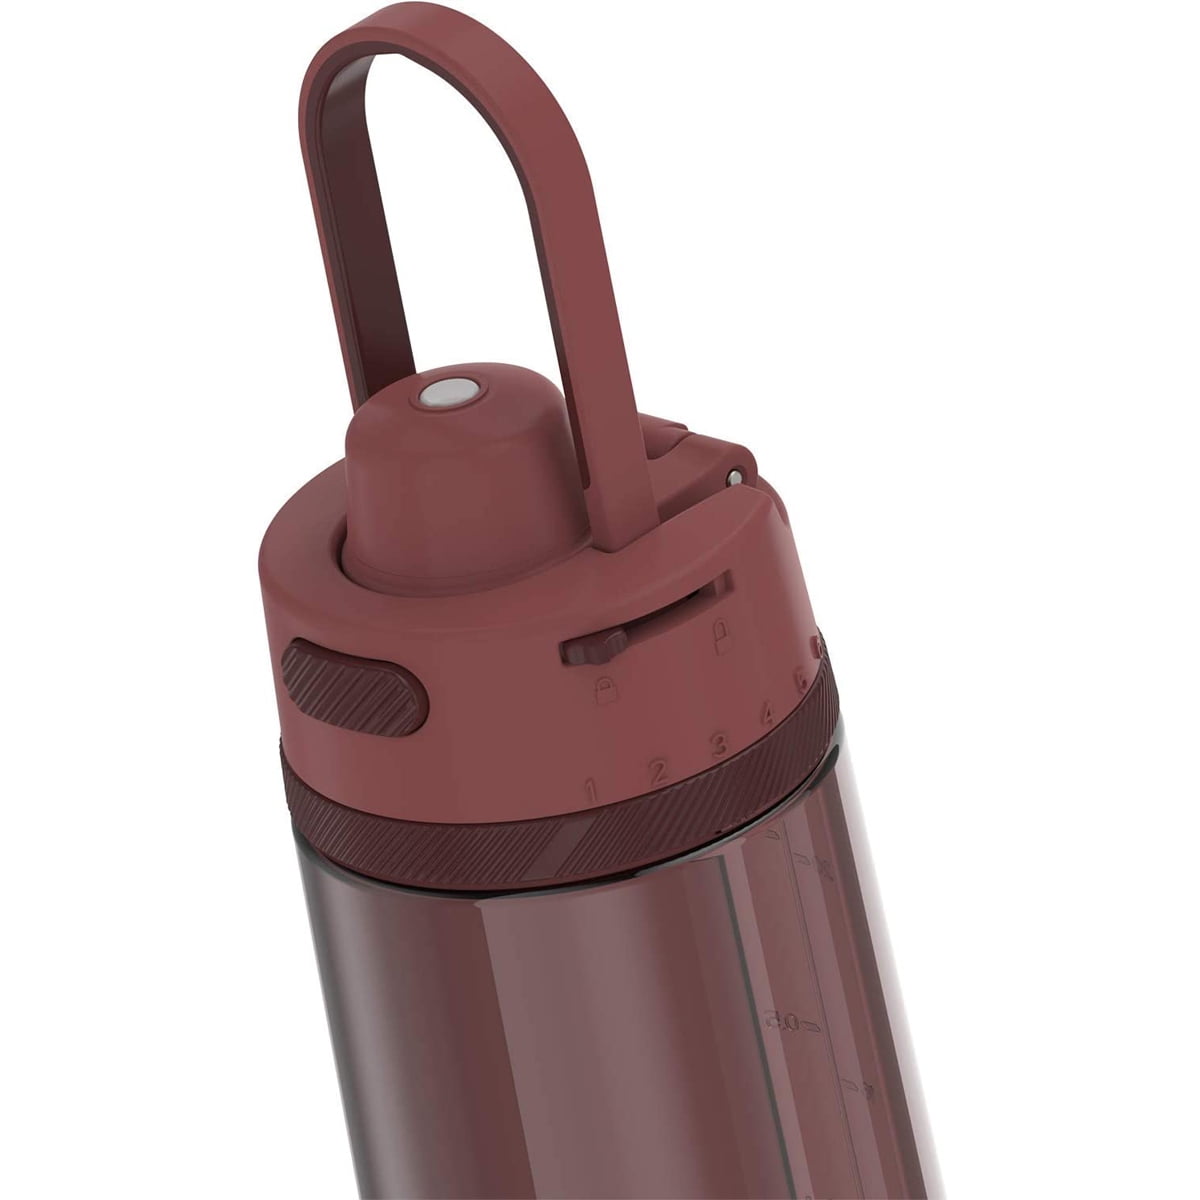 24 oz Stainless Steel Vacuum Thermal Water Bottle – AMDA